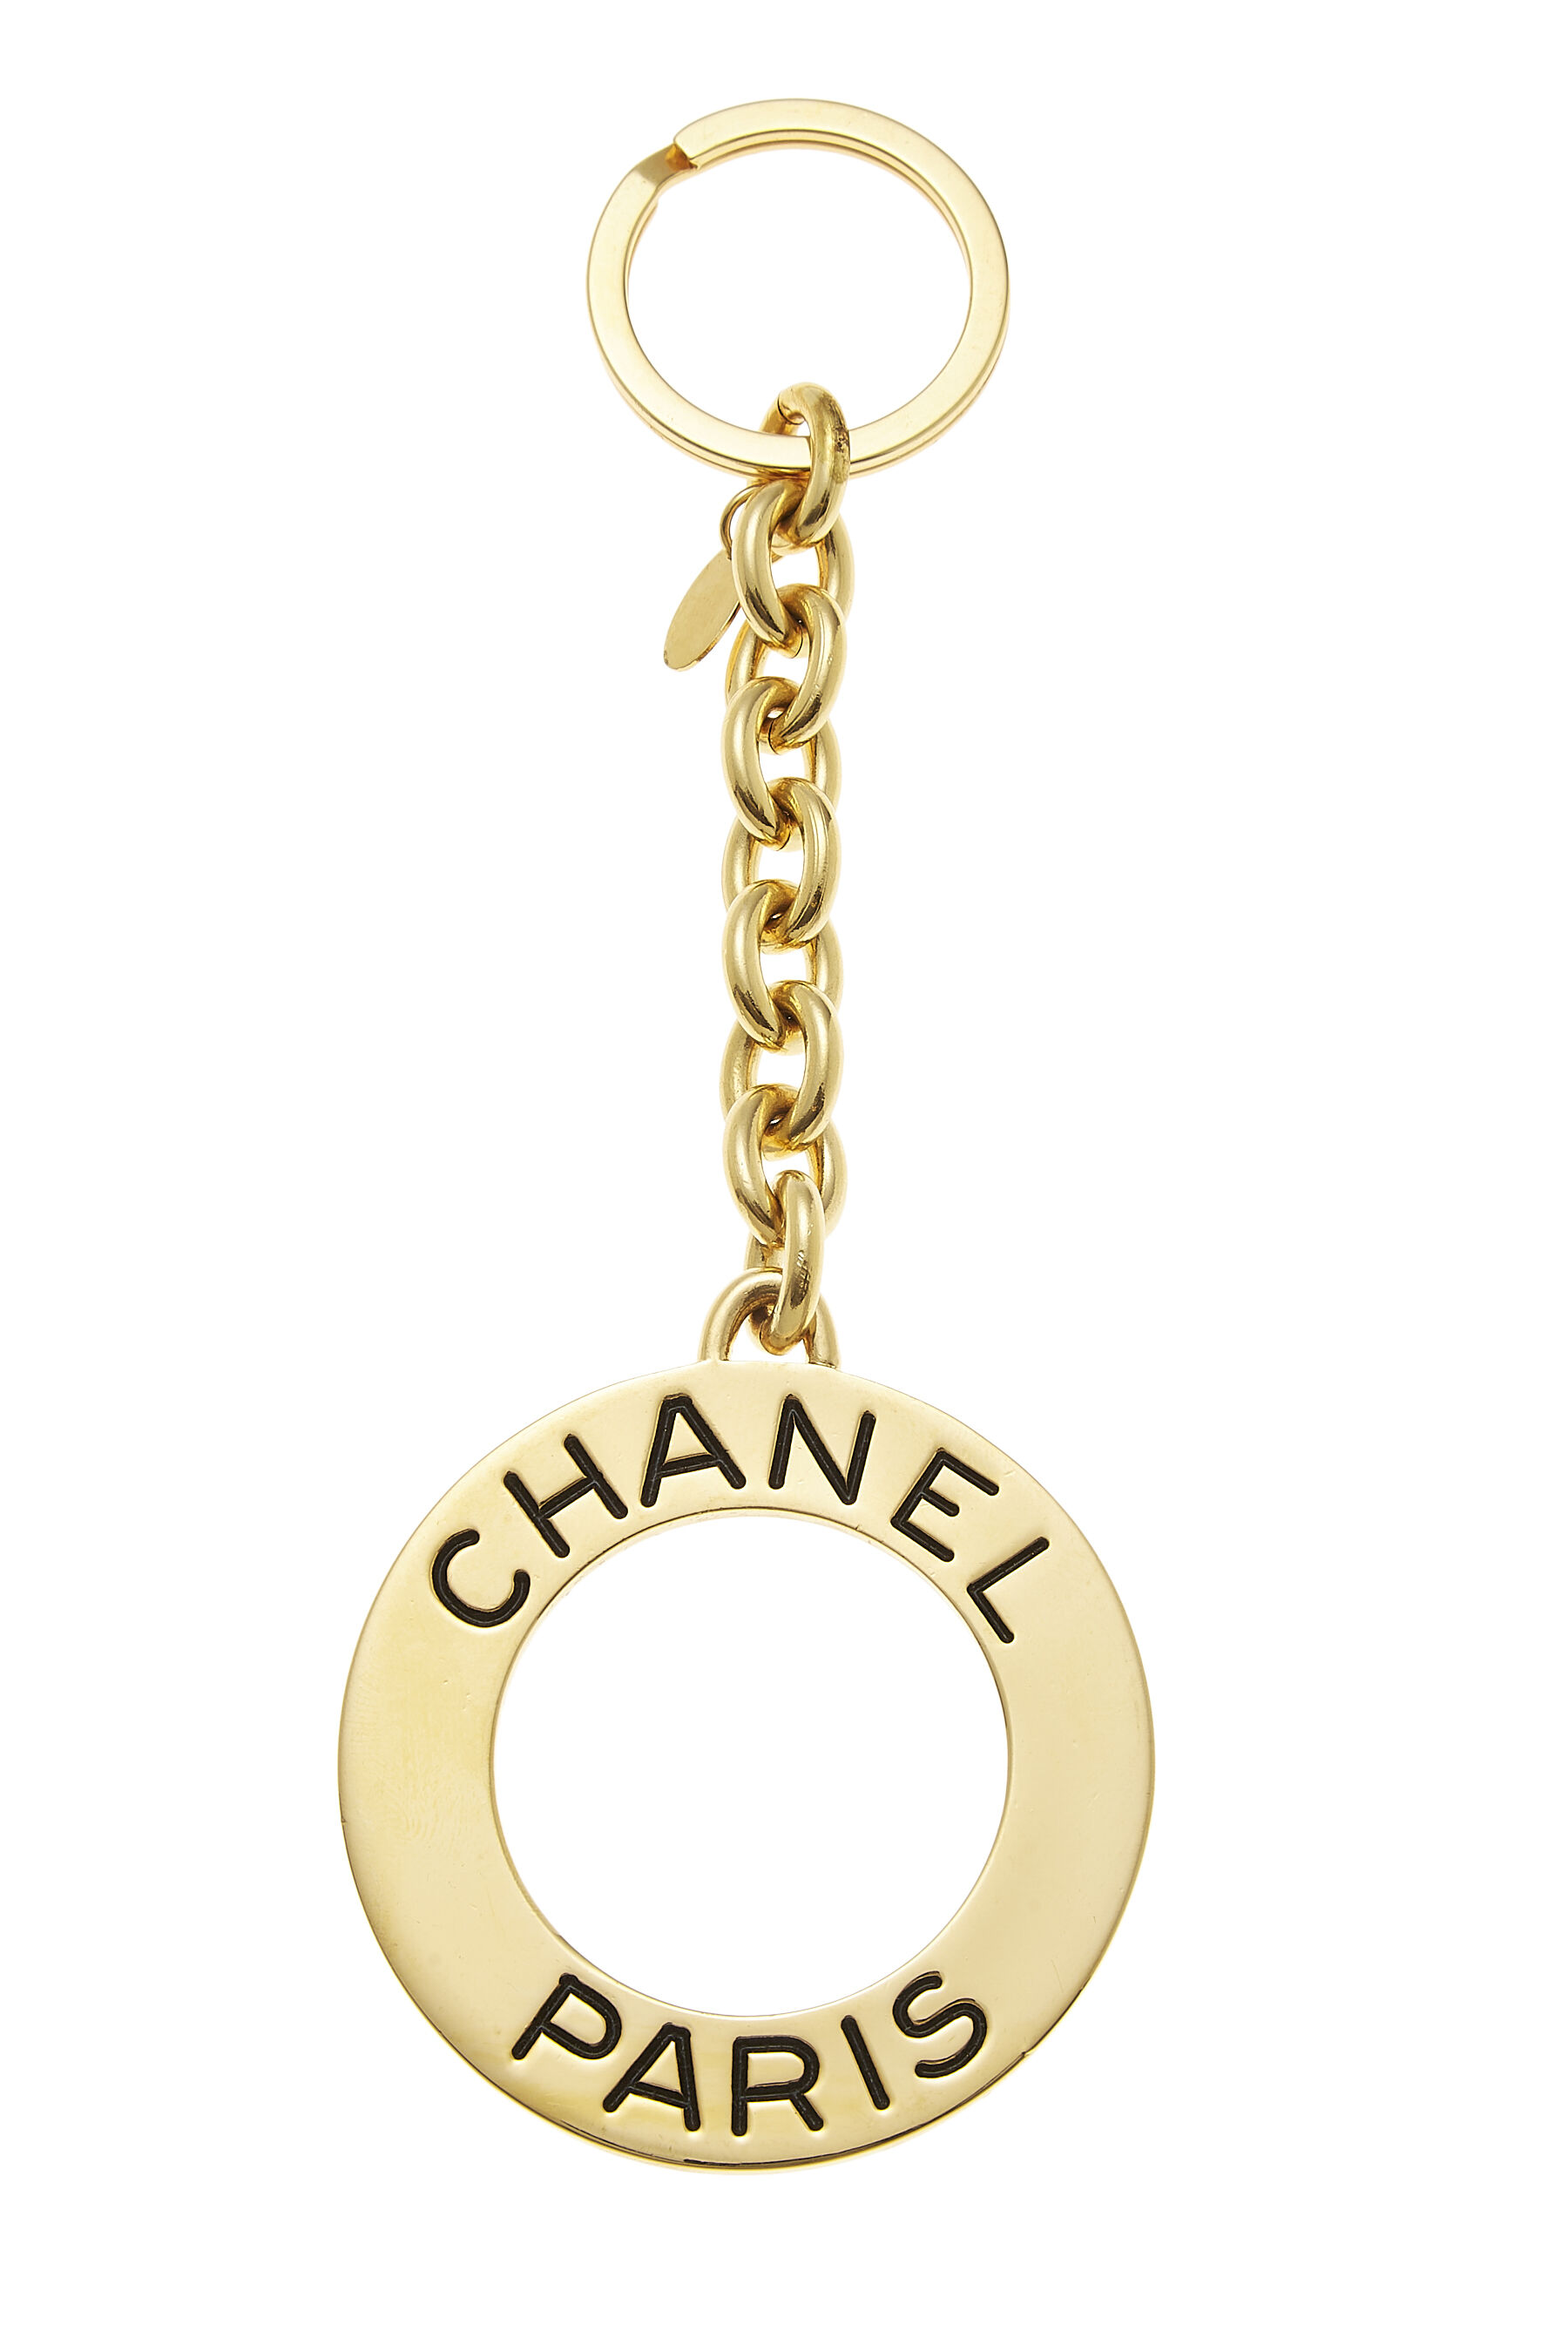 Chanel chanel 1993 gold - Gem